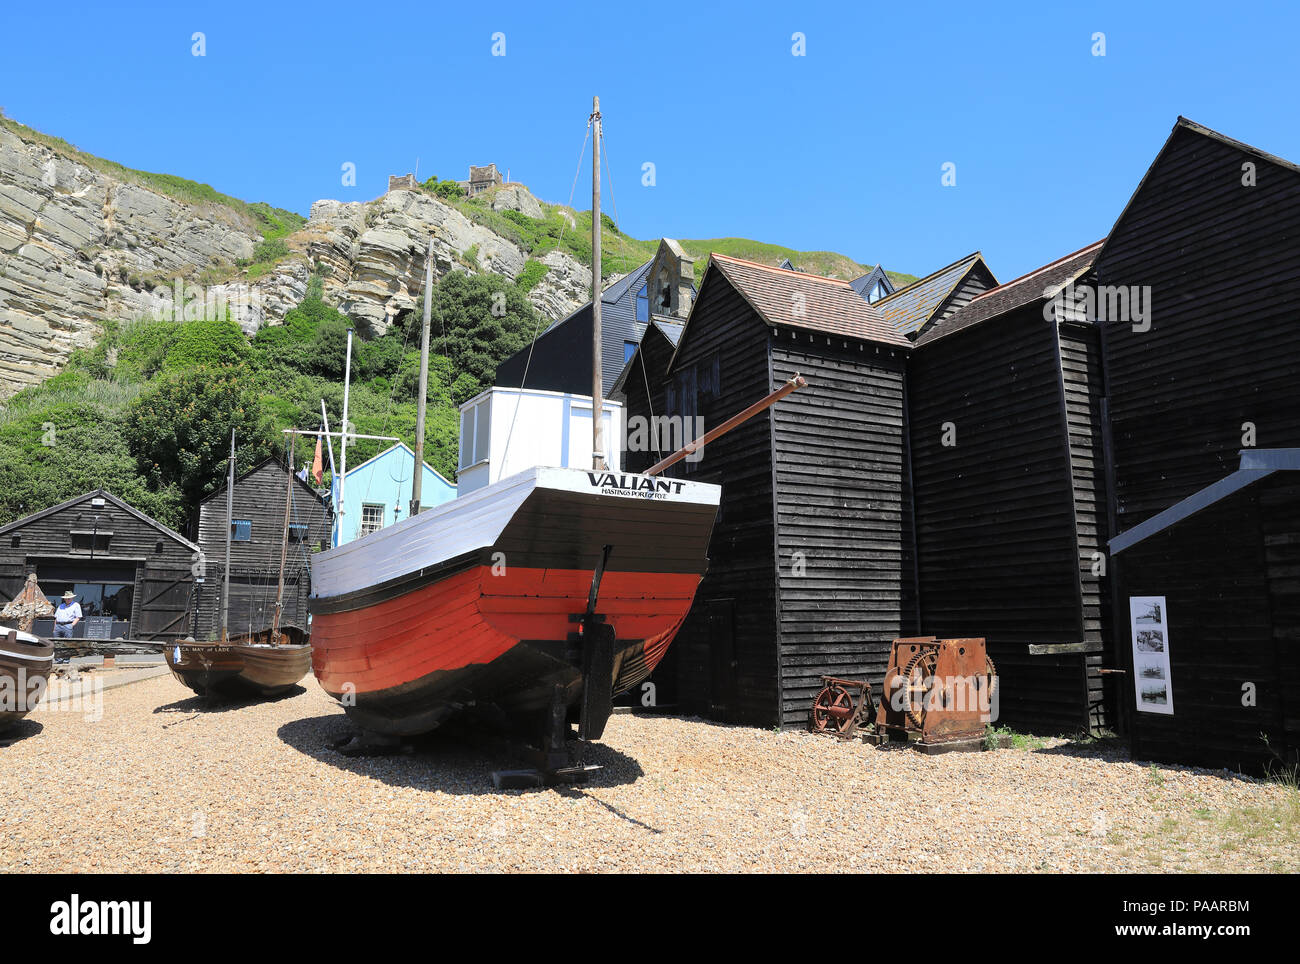 Die Geschäfte, die historischen Hoch, schwarz, Holz- Schuppen, noch von Fischern genutzt ihre Ausrüstung zu speichern, in Hastings, East Sussex, Großbritannien Stockfoto